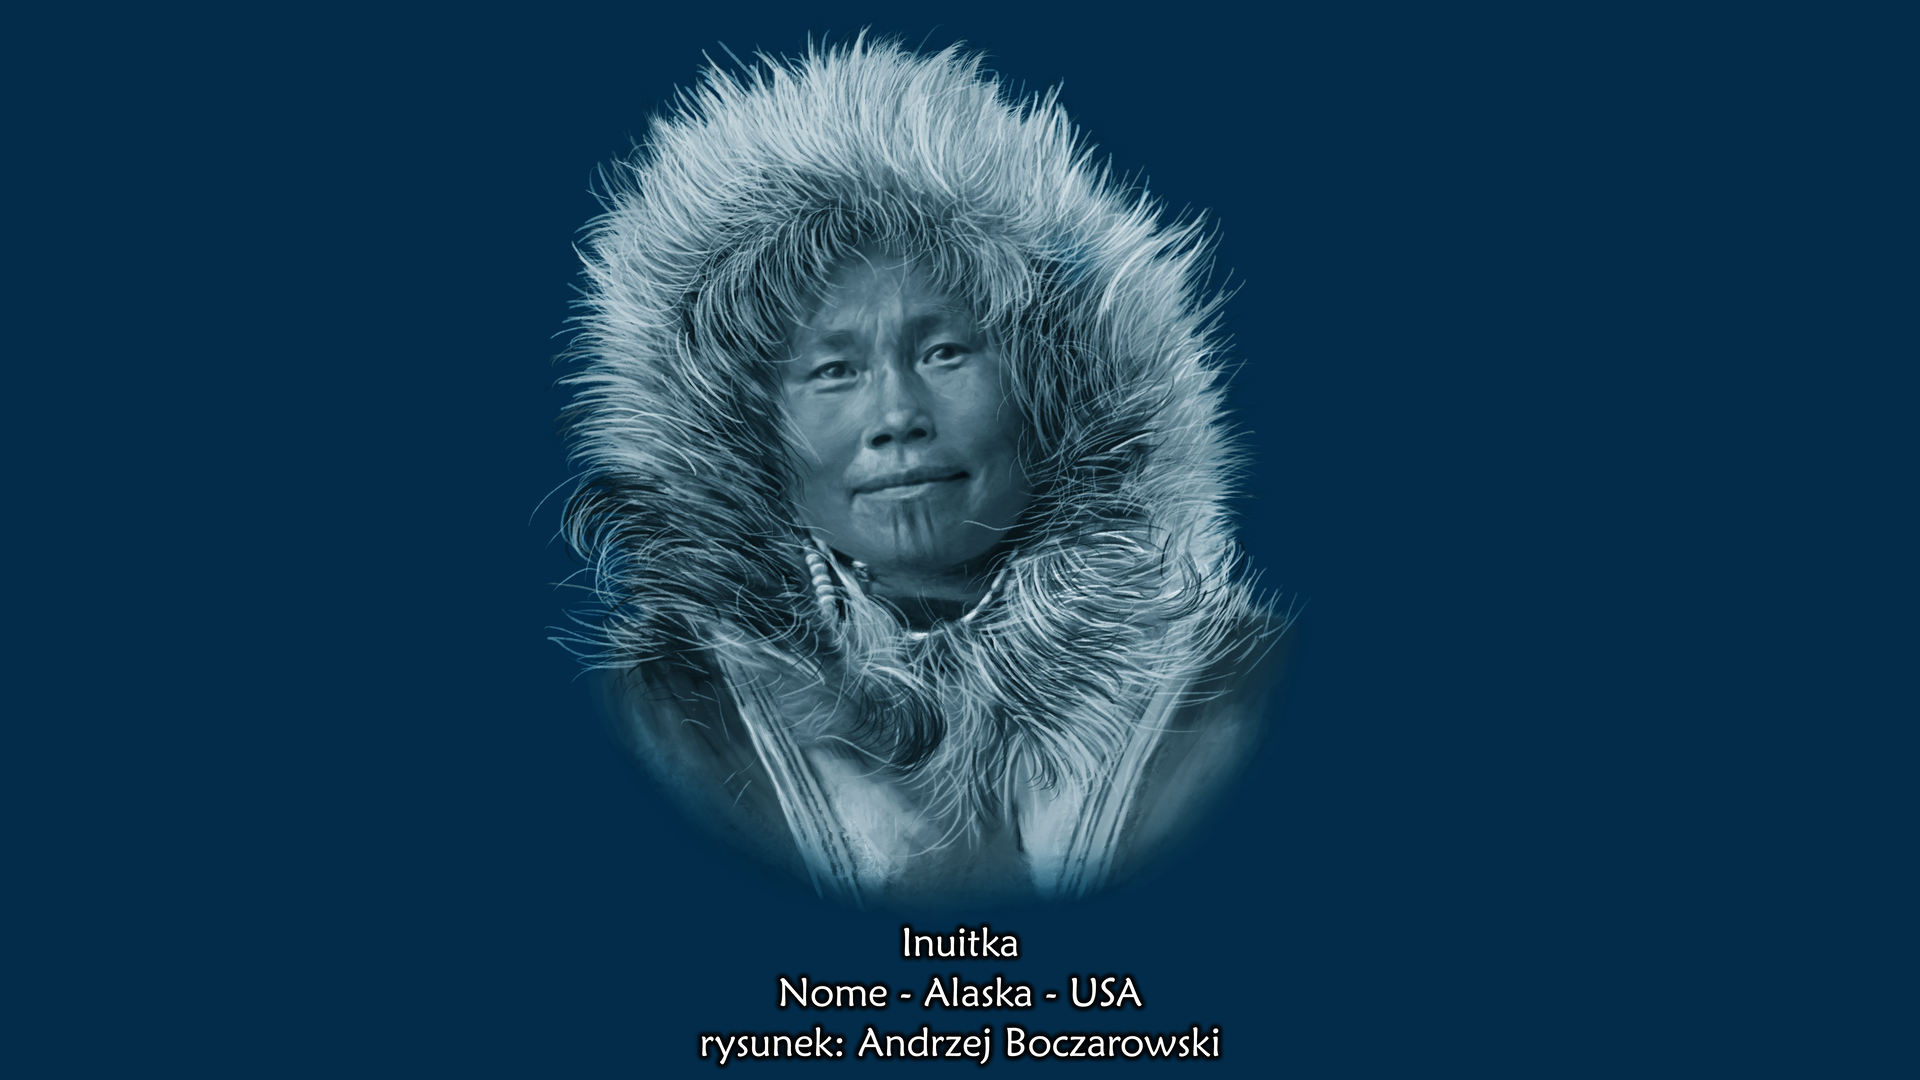 Ilustracja prezentuje portret Inuitki. Jest to, kobieta o okrągłej płaskiej twarzy, małych szparach ocznych i małym nosie. Kobieta ubrana jest w kurtkę z futrzanym kapturem.